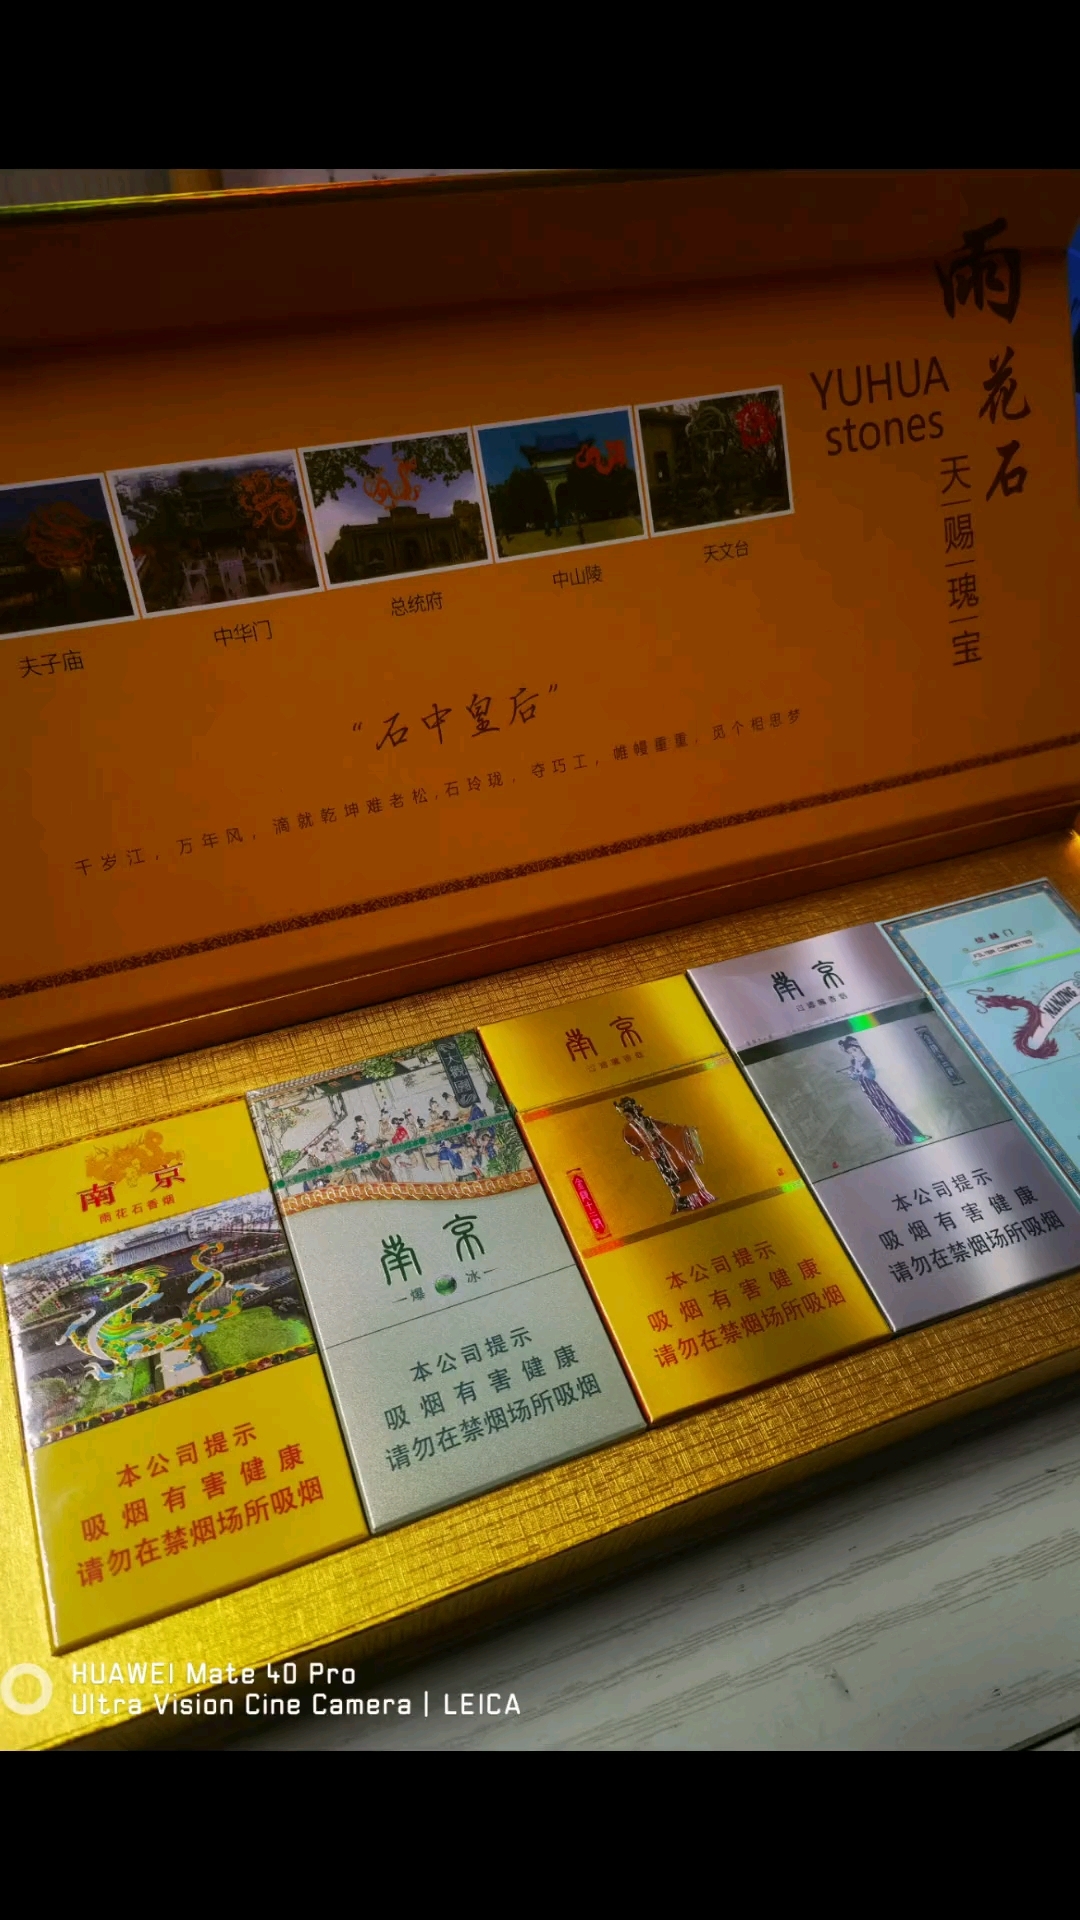 南京烟18元一盒烟图片图片